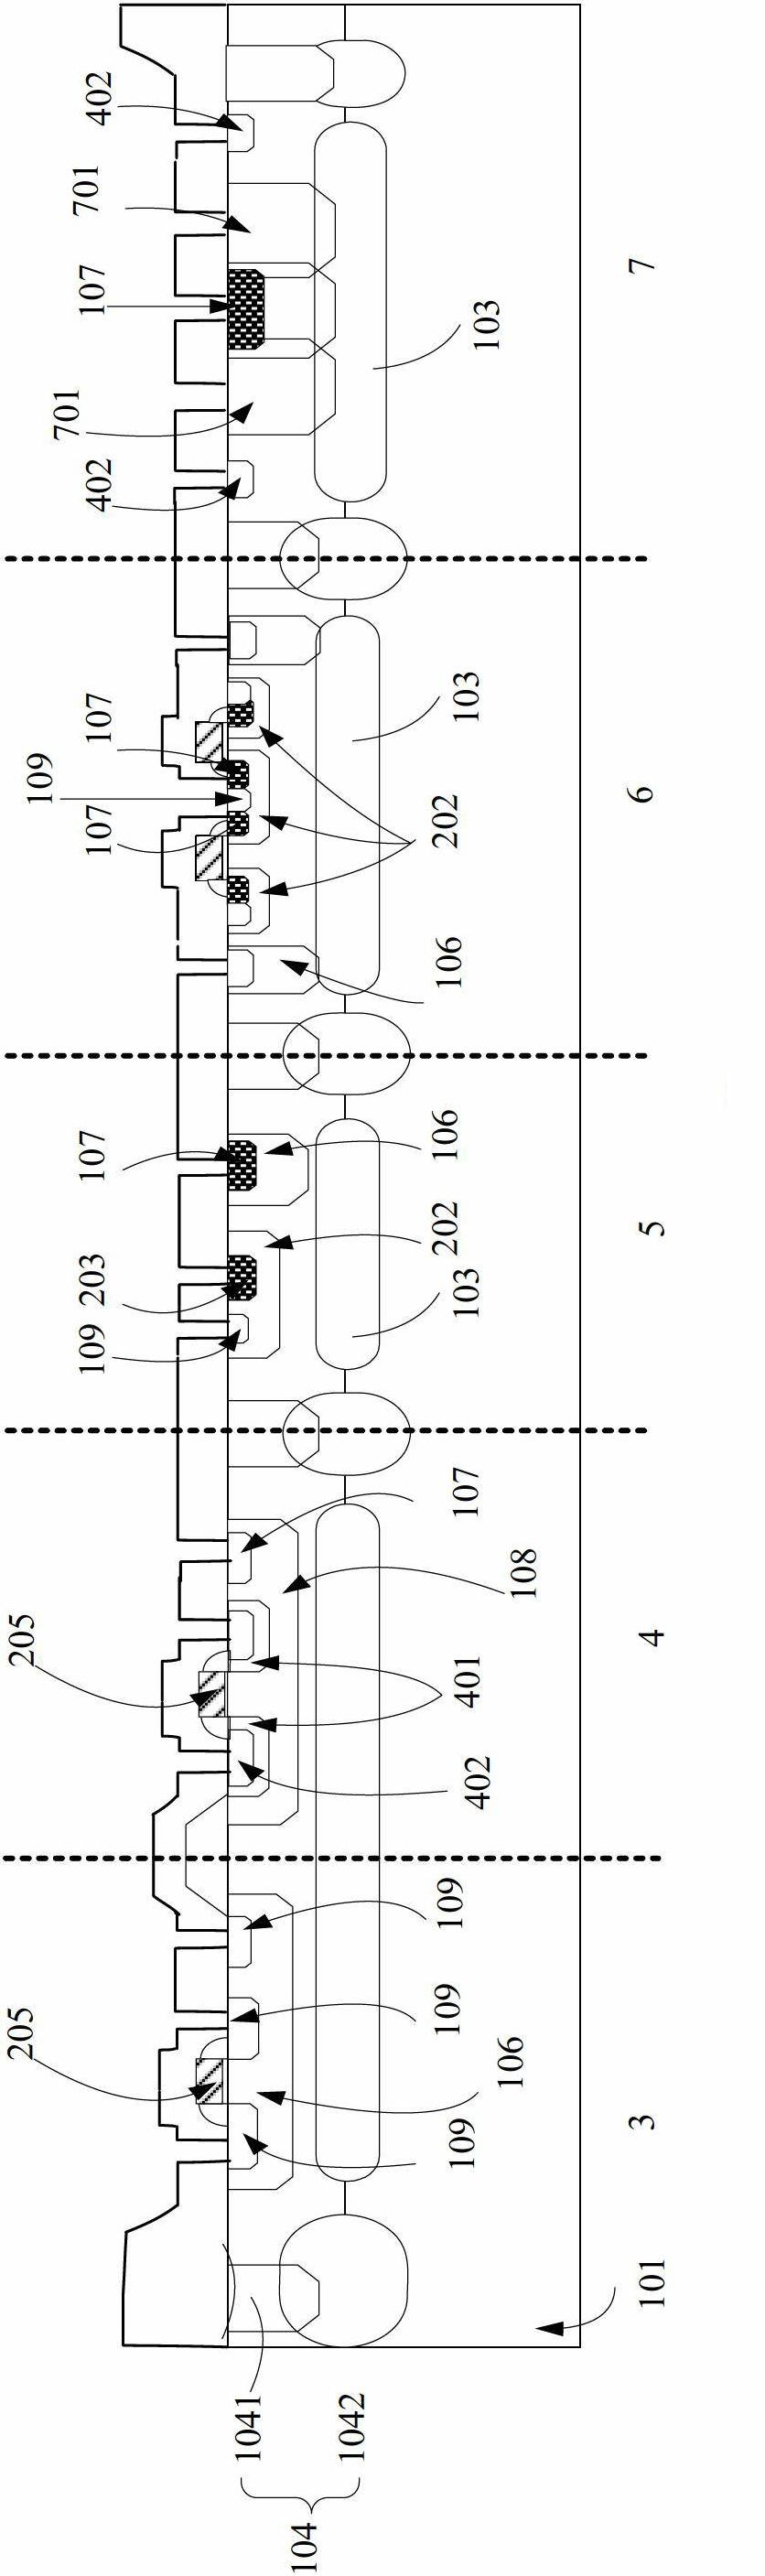 Ultrahigh voltage BCD (Bipolar CMOS DMOS) process and ultrahigh voltage BCD device